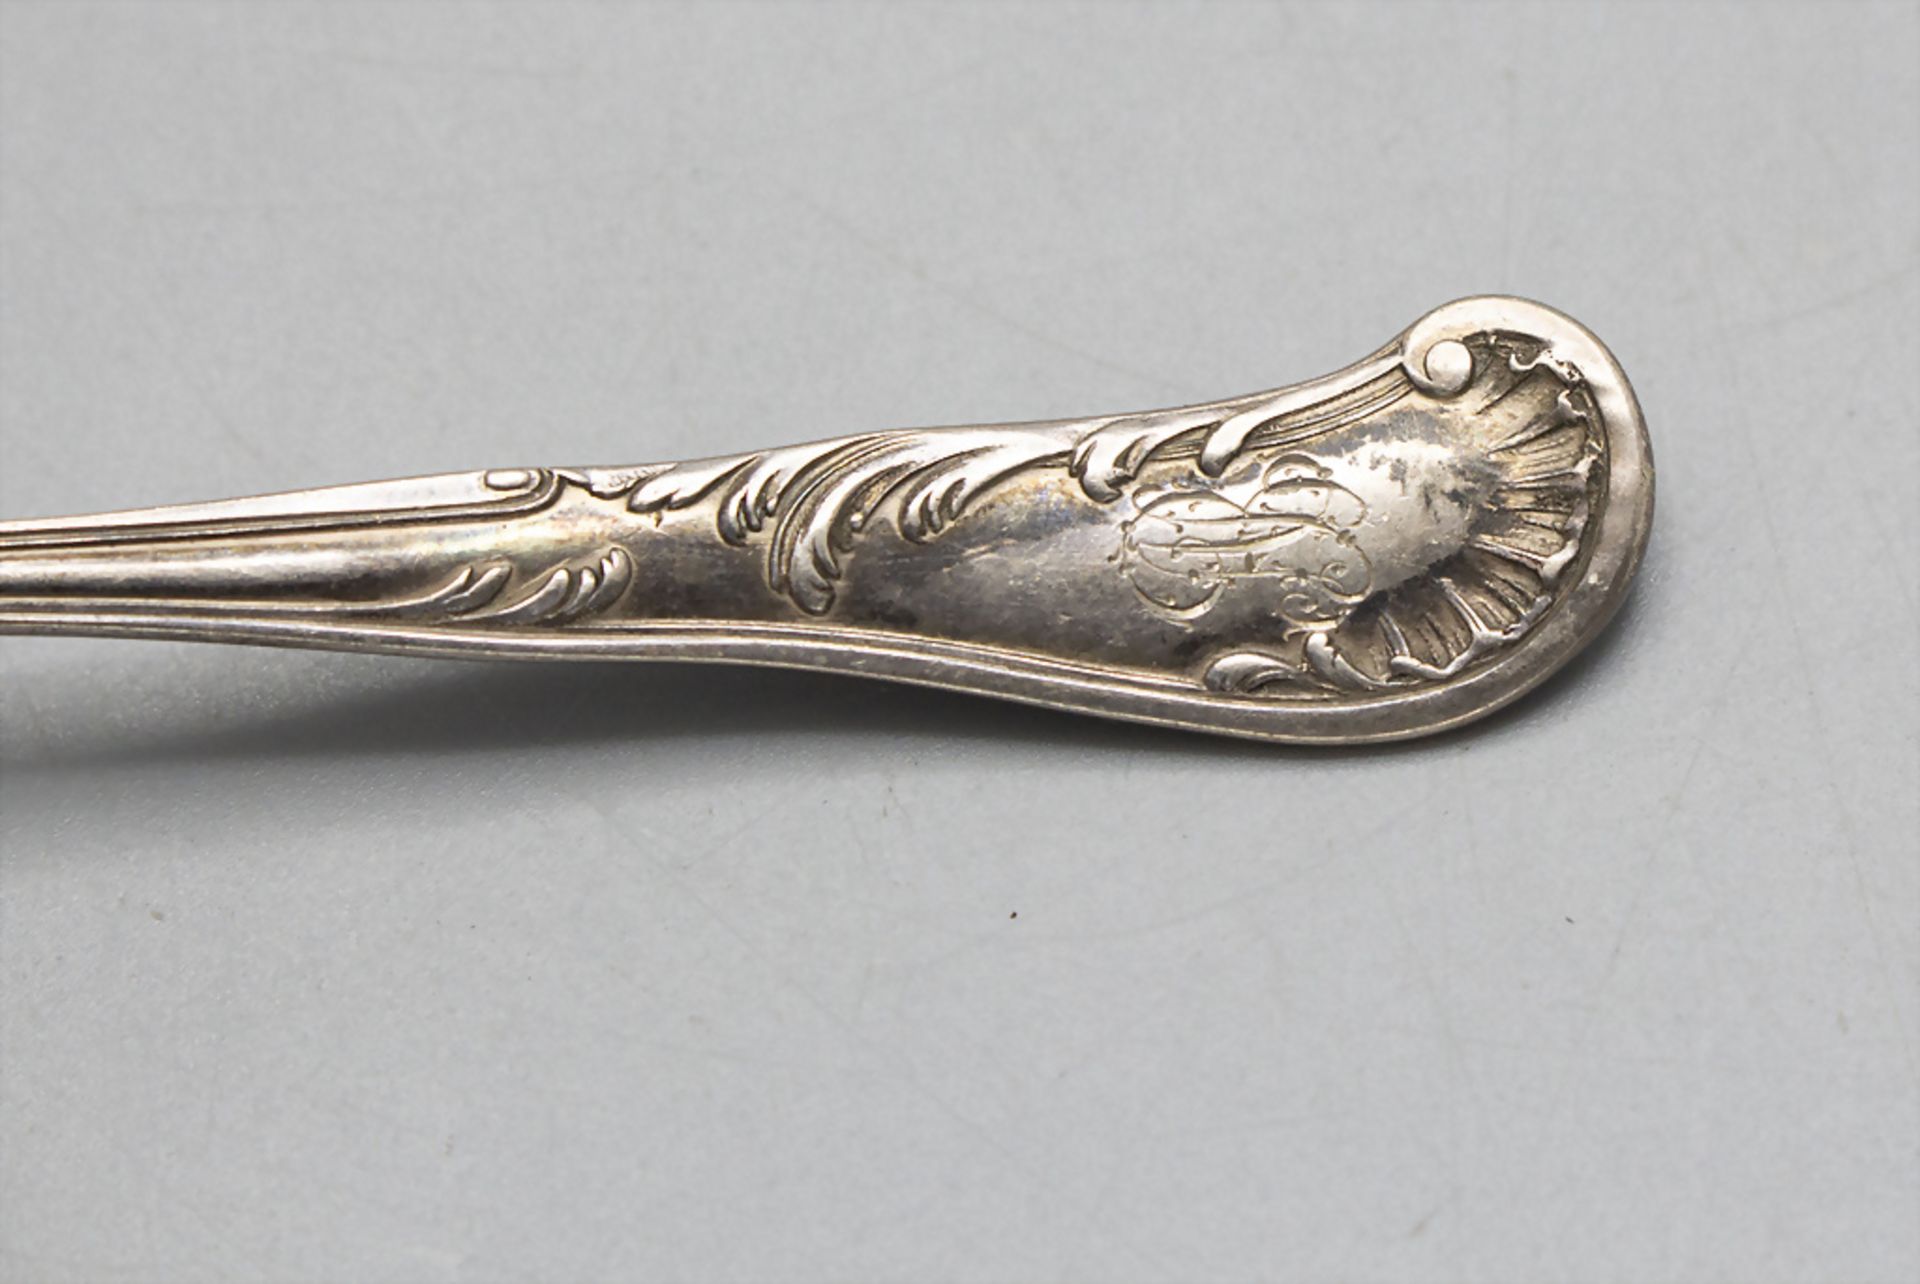 6 Teelöffel / 6 silver tea spoons, deutsch, um 1880 - Image 3 of 3